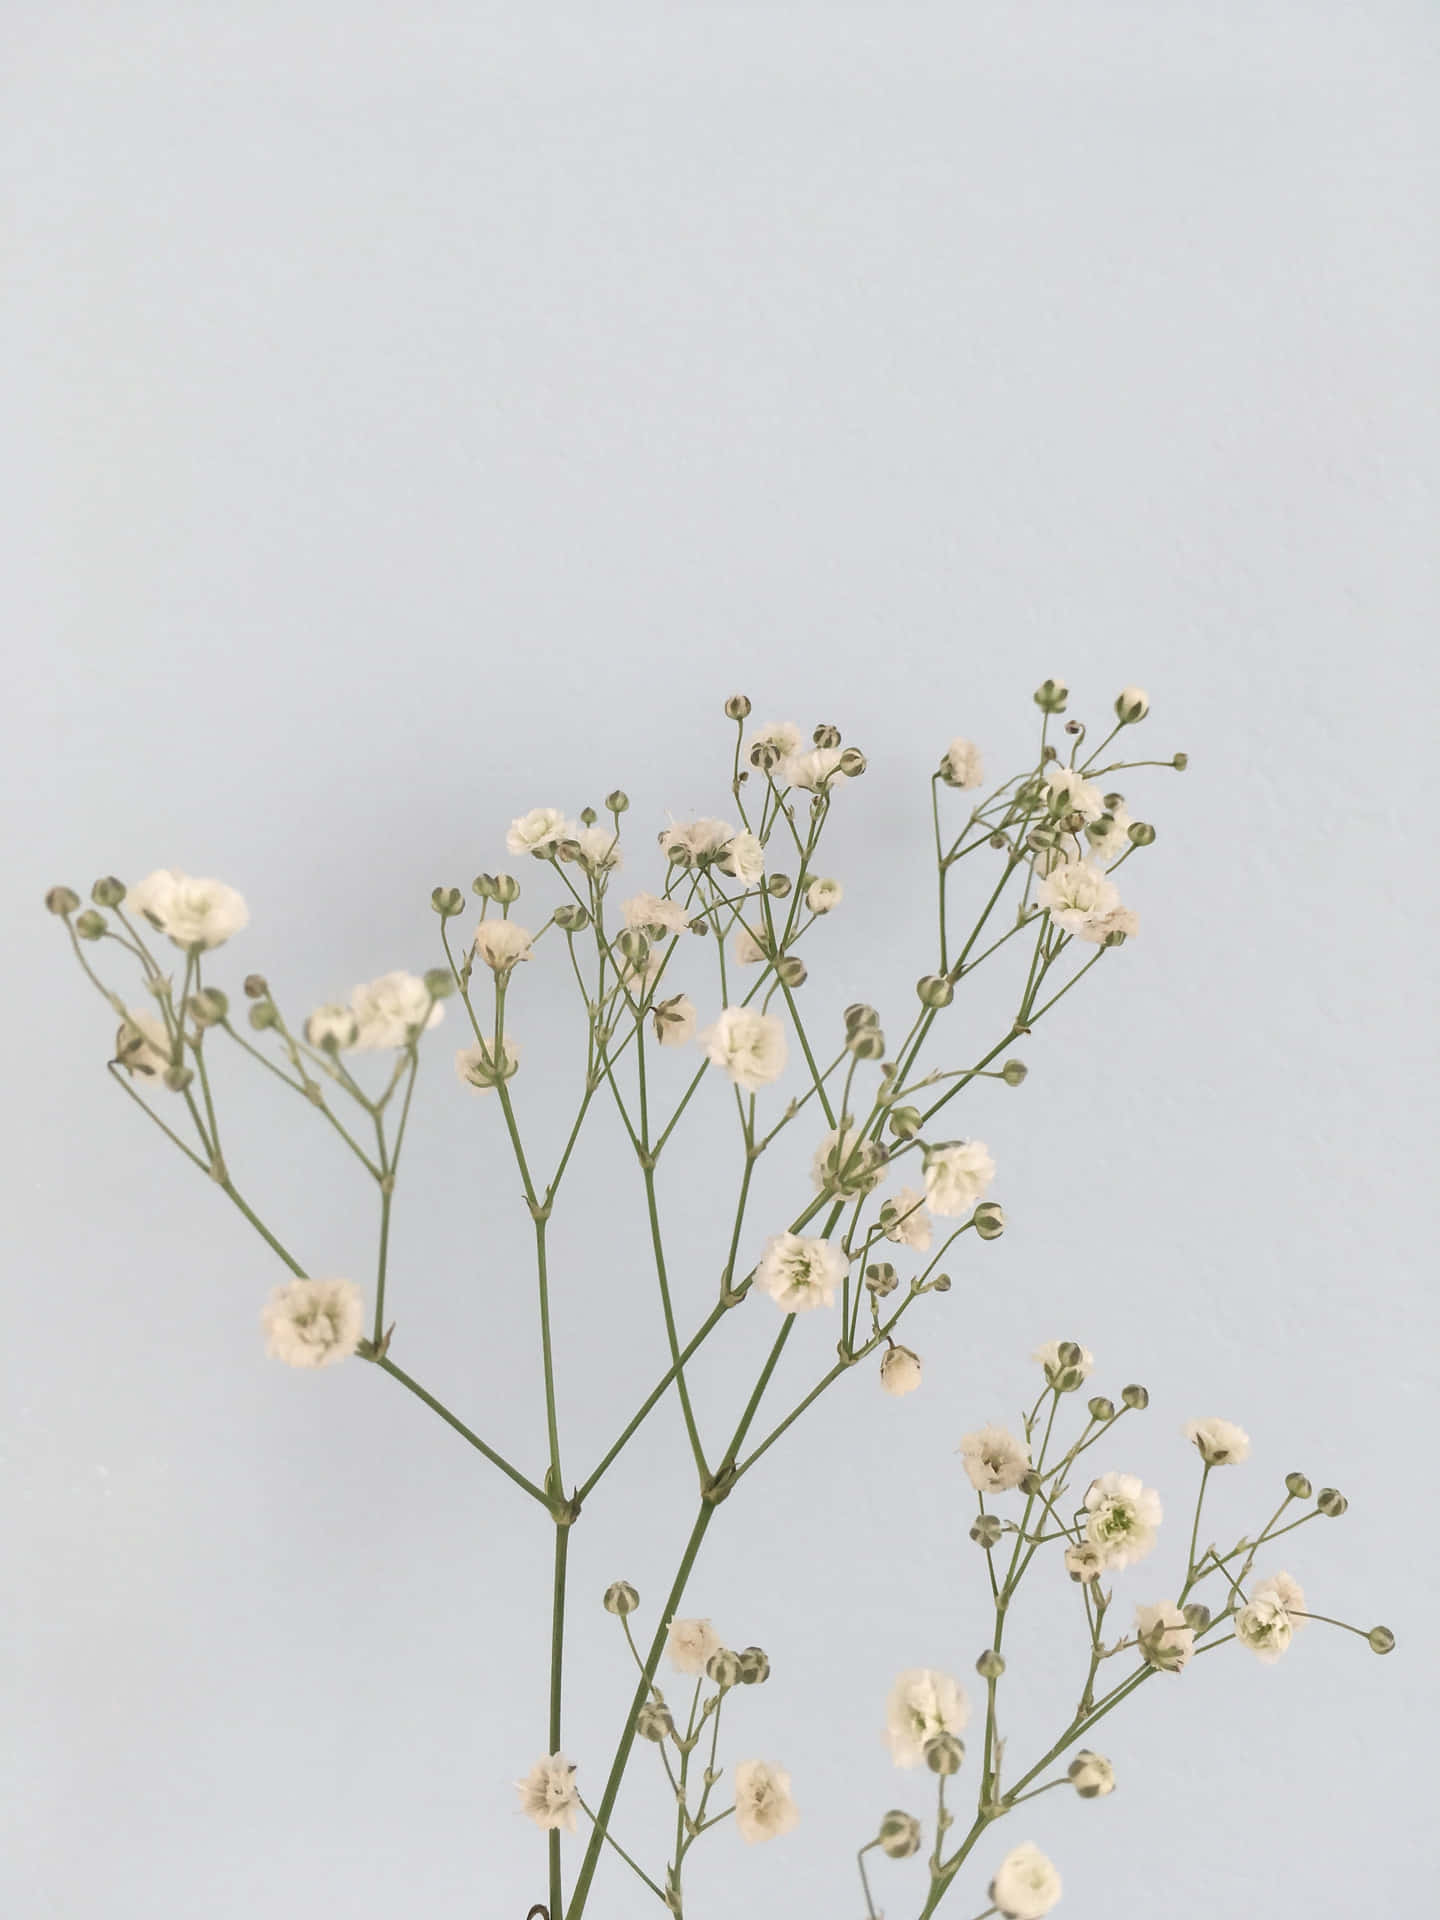 Minimalist White Flowers Against Gray Background.jpg Wallpaper